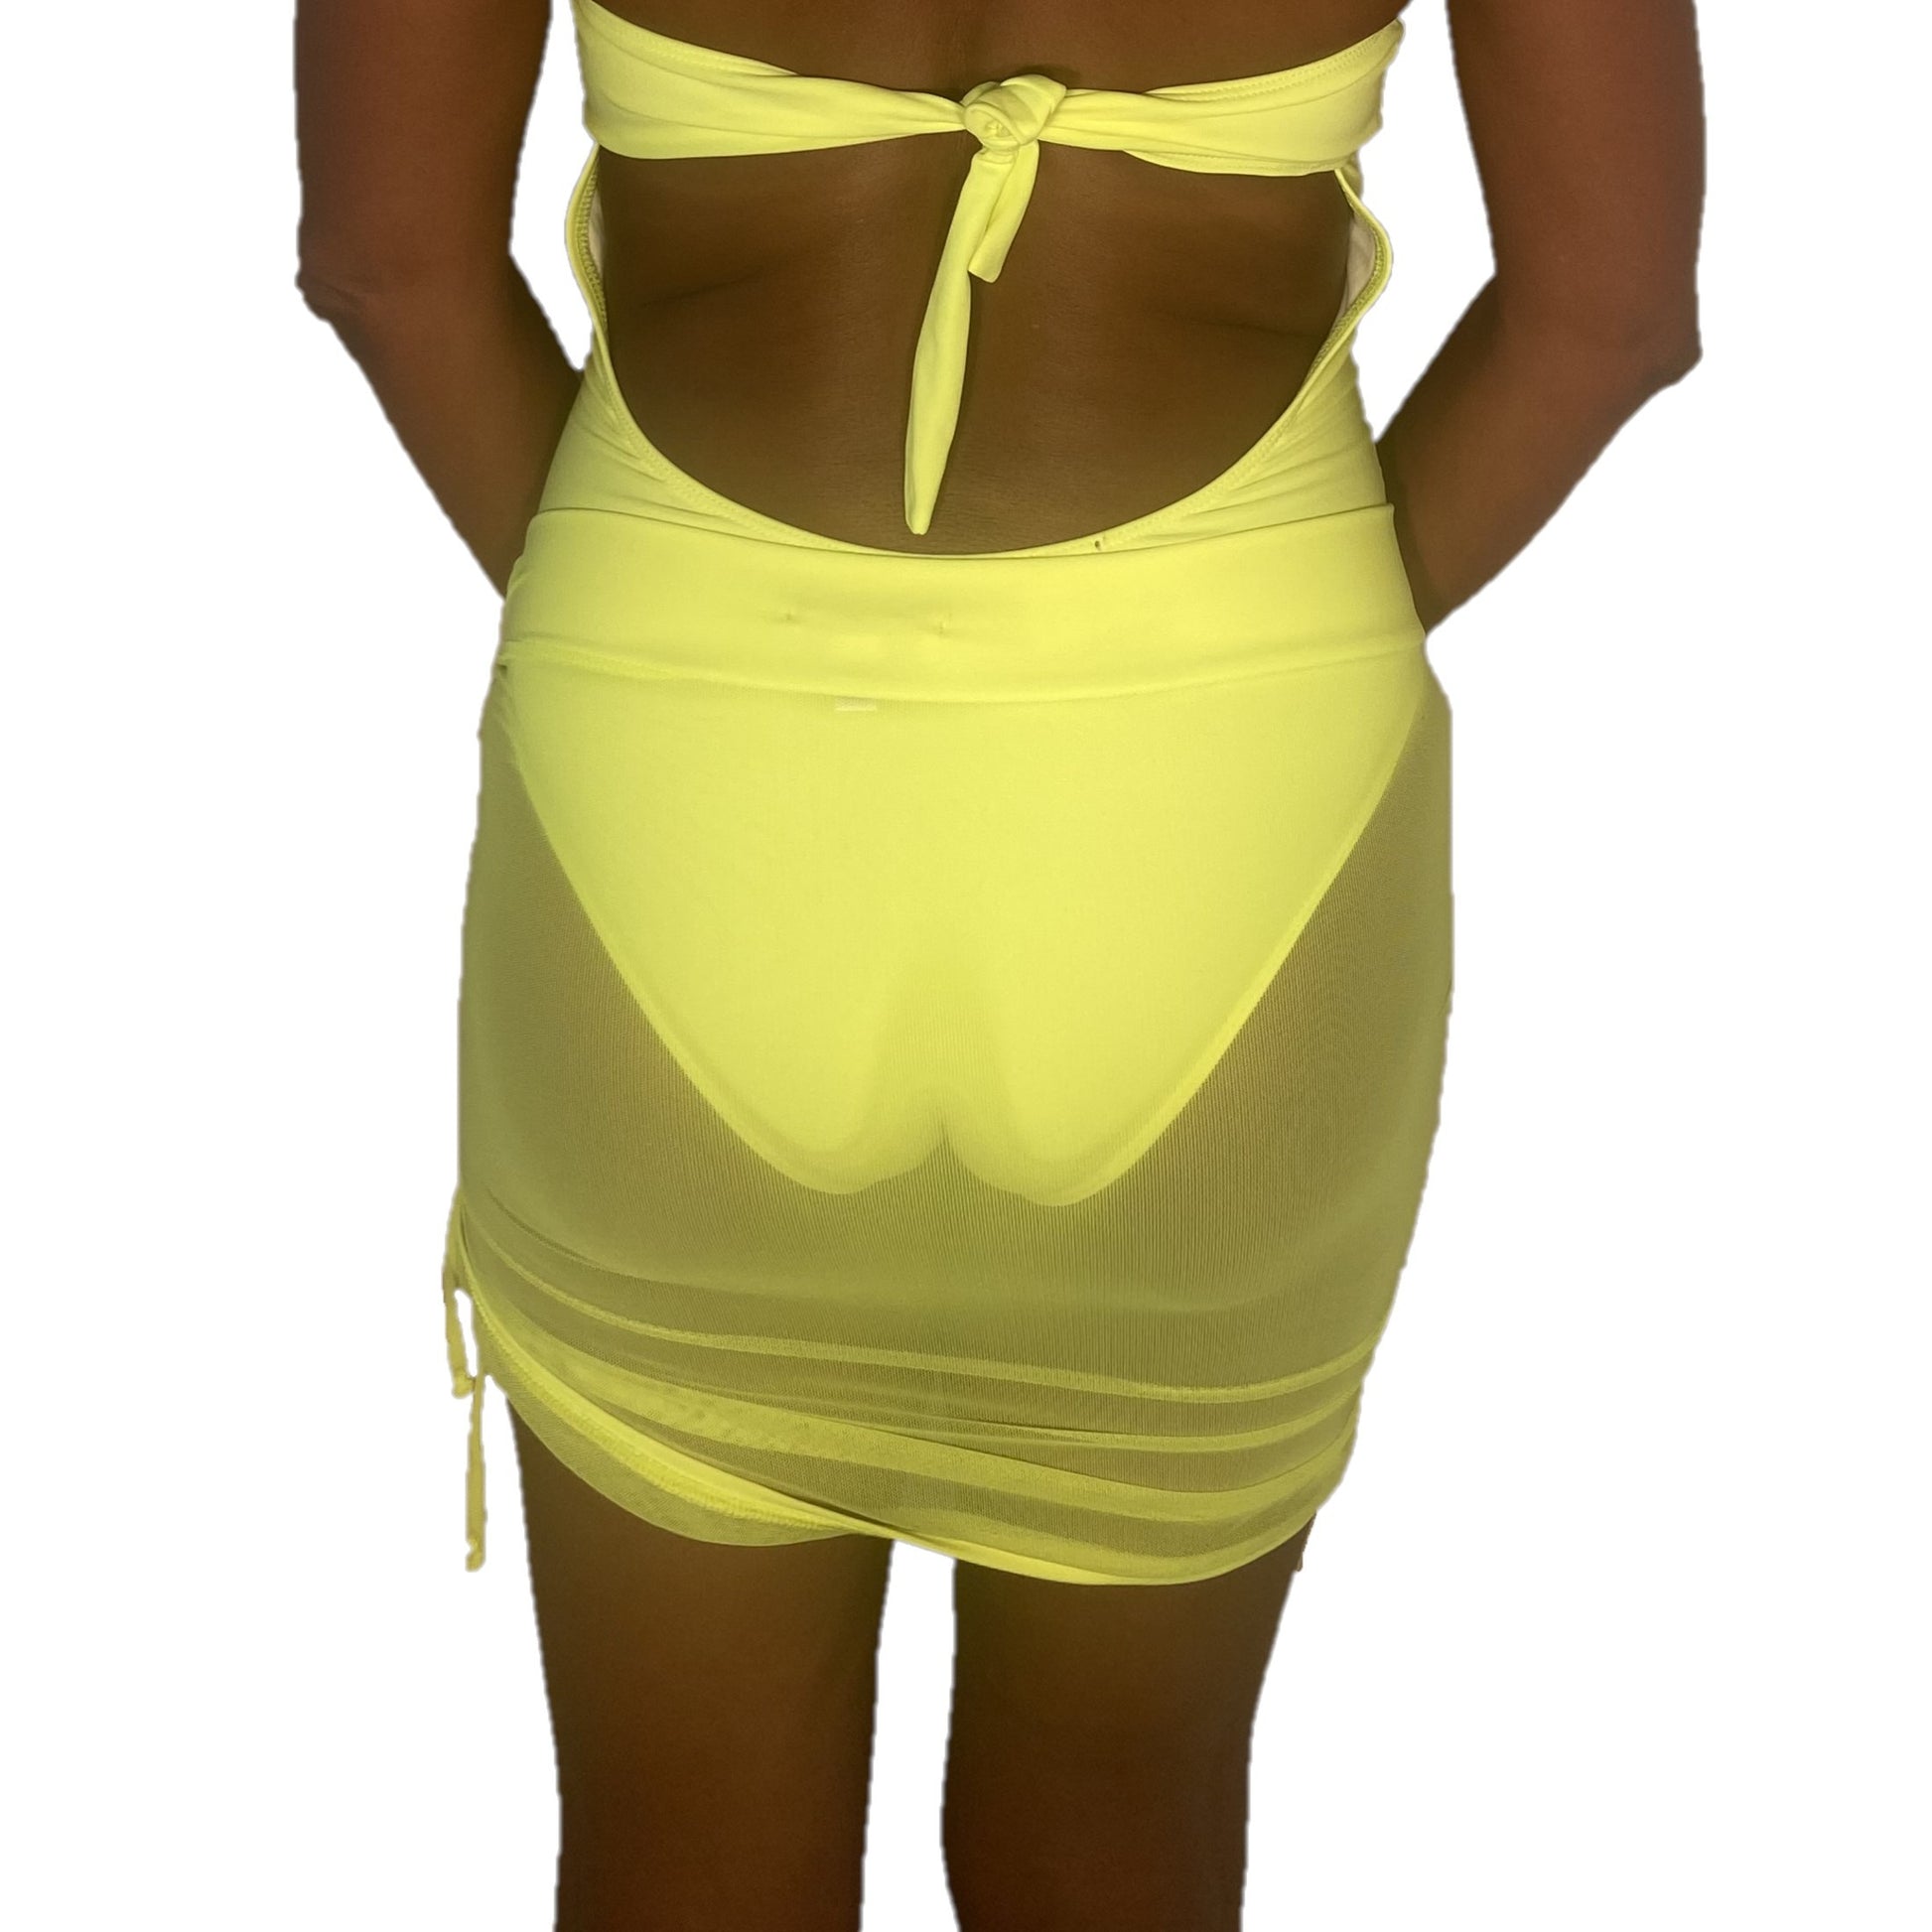 Beleza Drawstring Cover Up Skirt - Neon Yellow Mesh